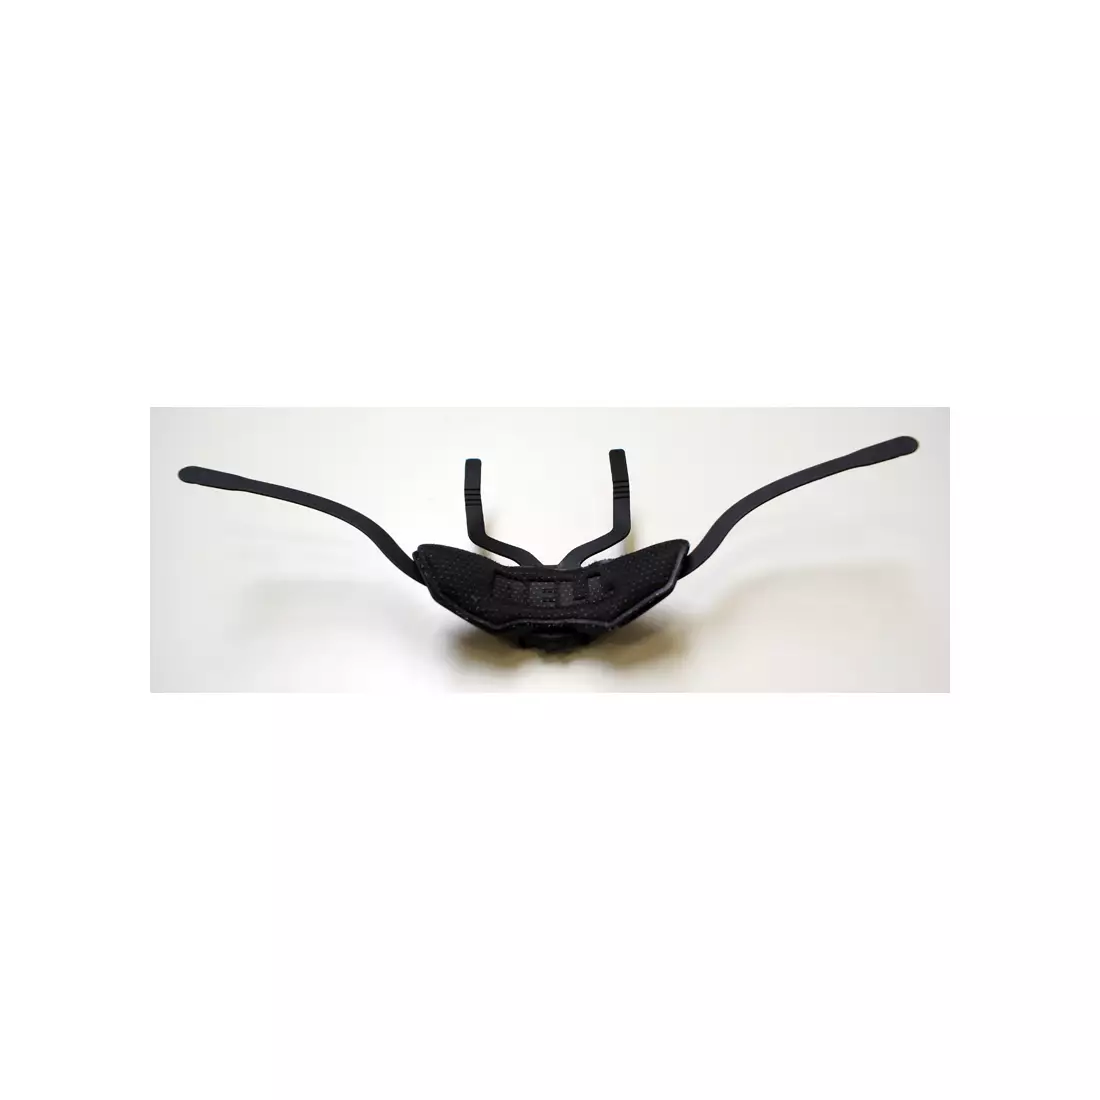 BELL regulacja obwodu głowy do kasku SUPER SPPED DIAL FS black S/M BEL-8009141